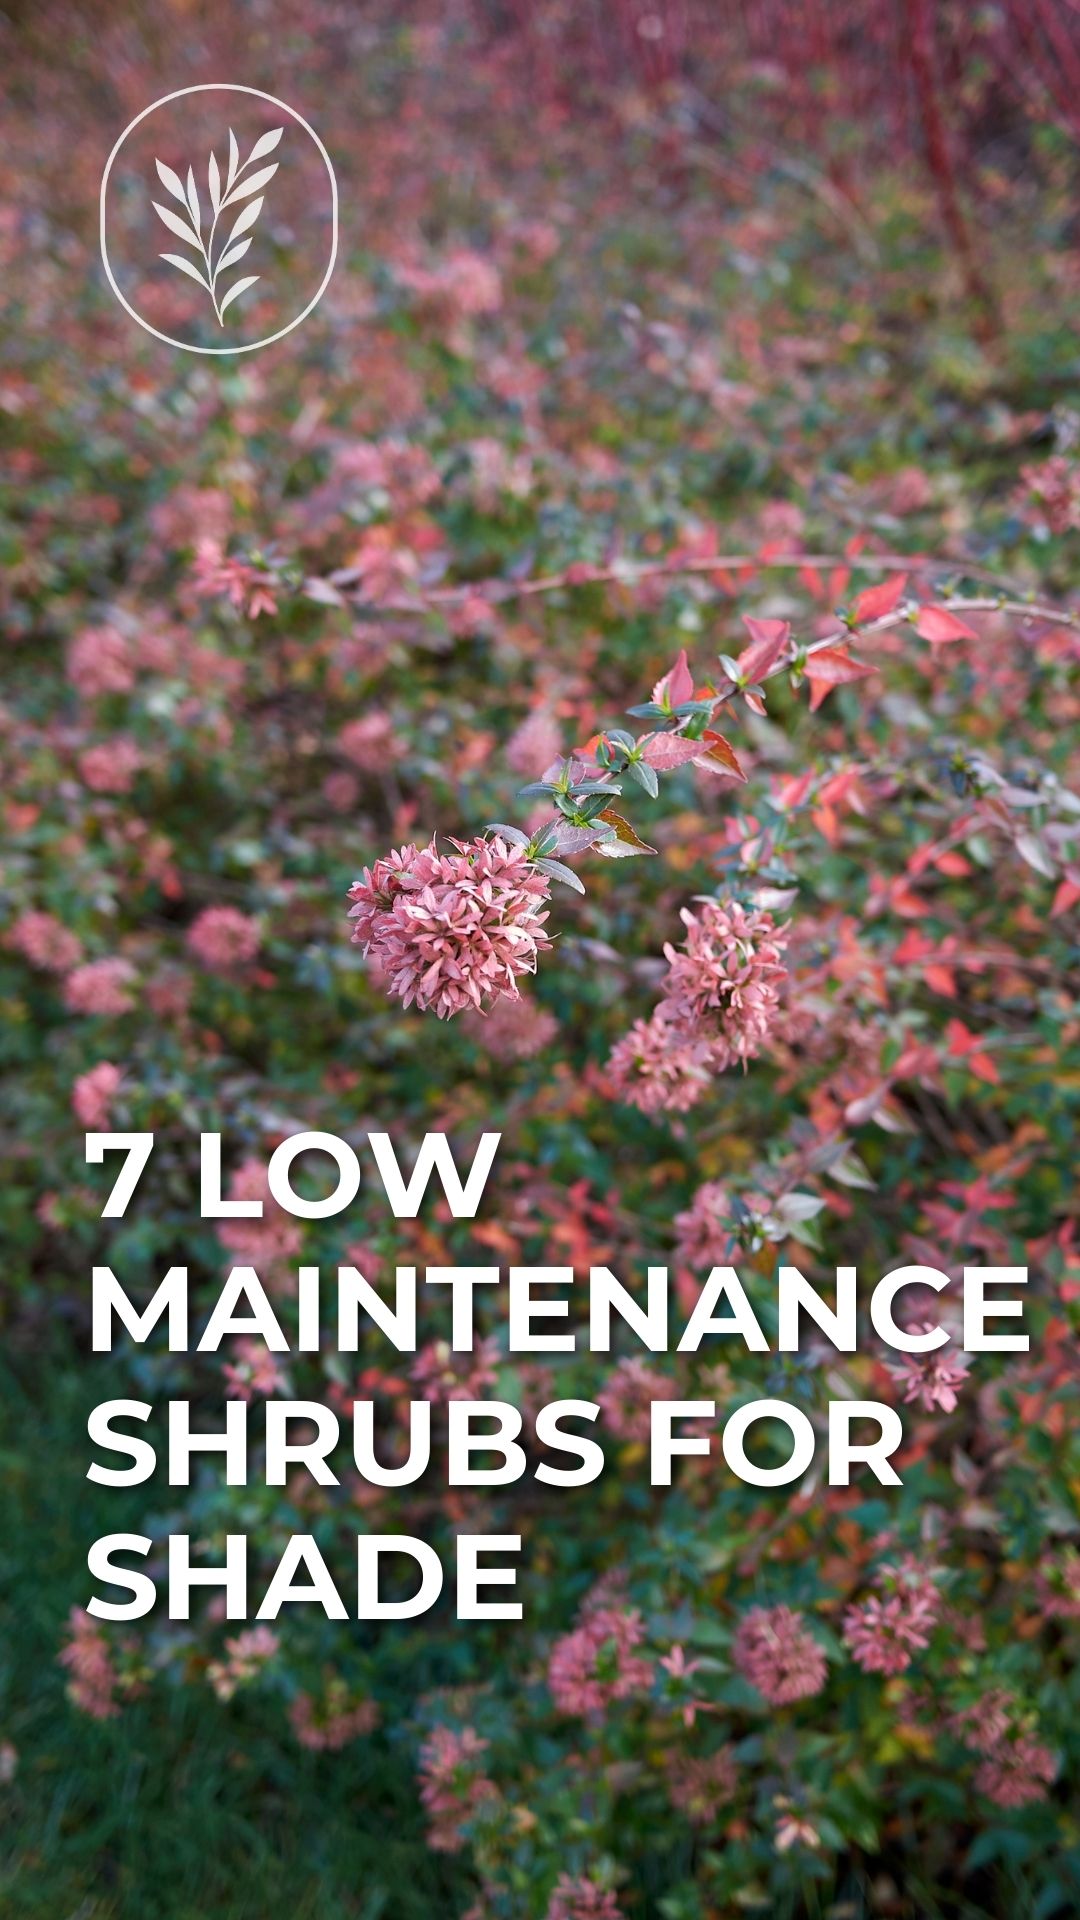 7 low maintenance shrubs for shade - story via @home4theharvest